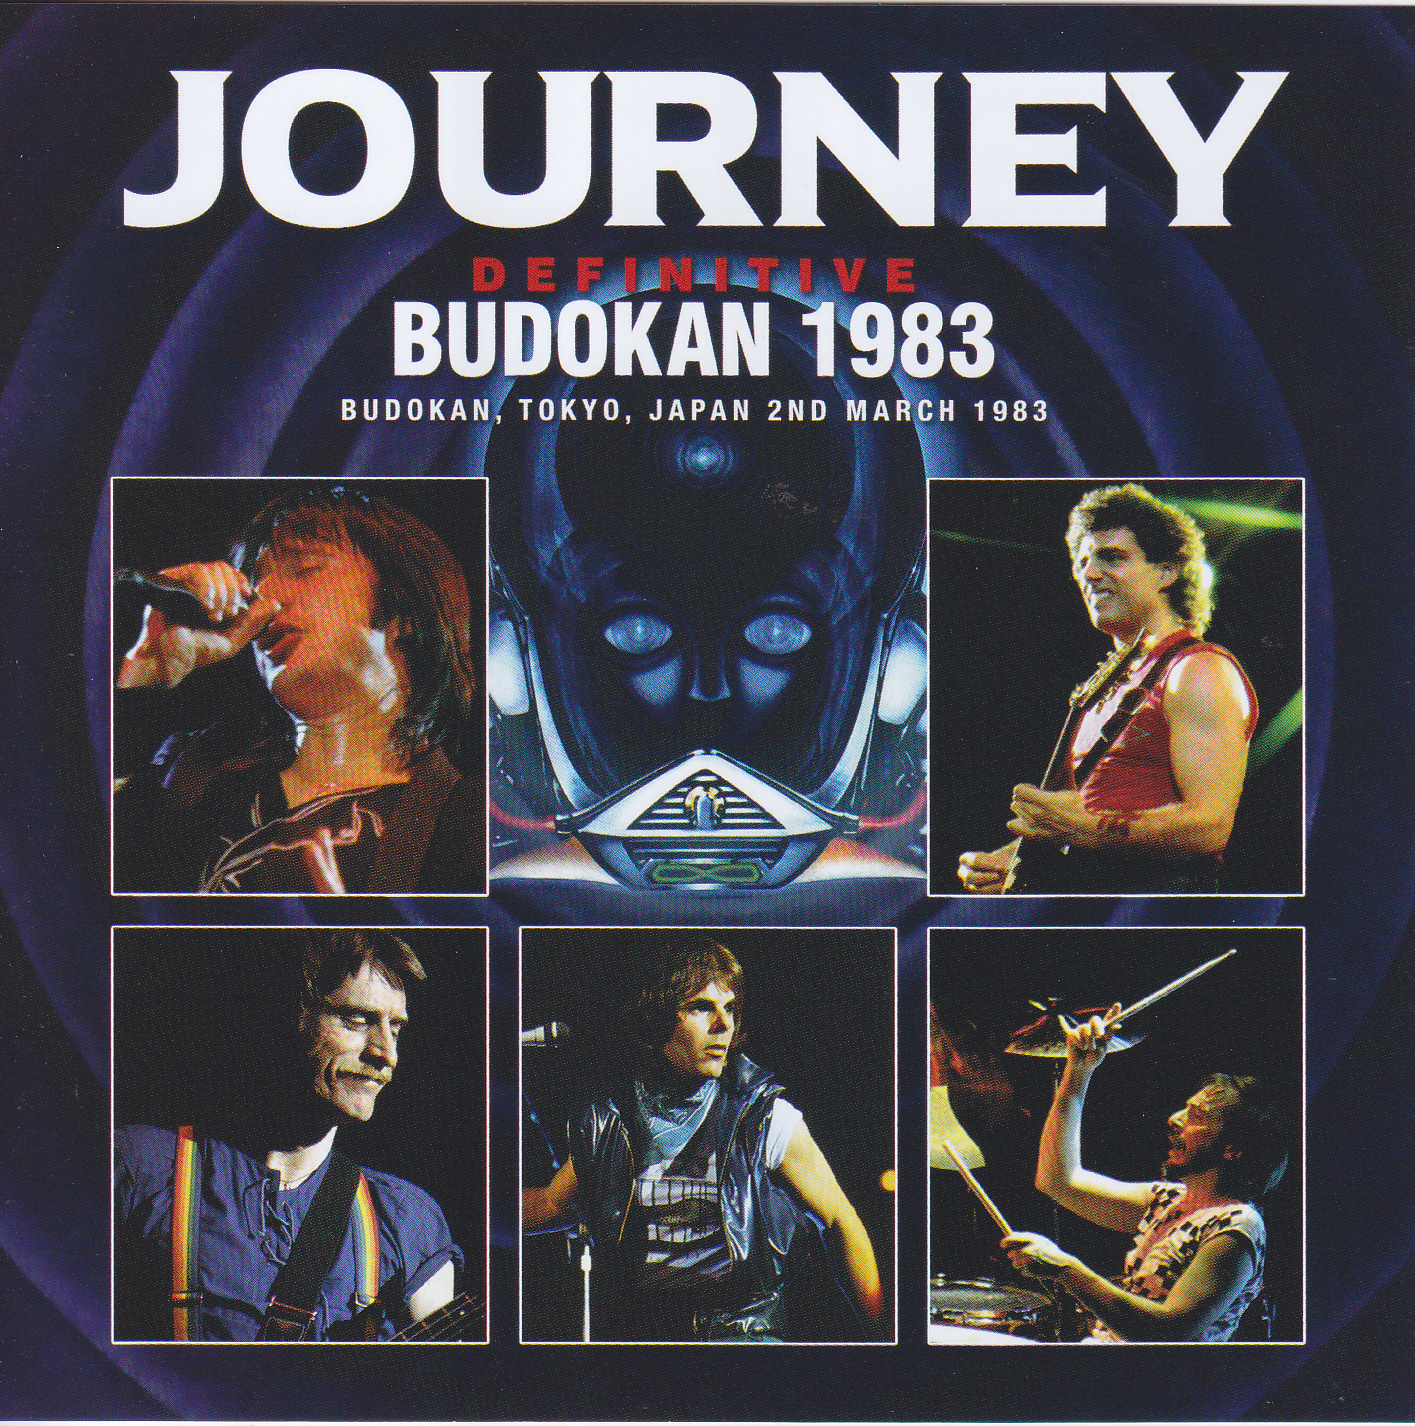 Journey / Definitive Budokan 1983/ 2CD+1Bonus DVDR – GiGinJapan